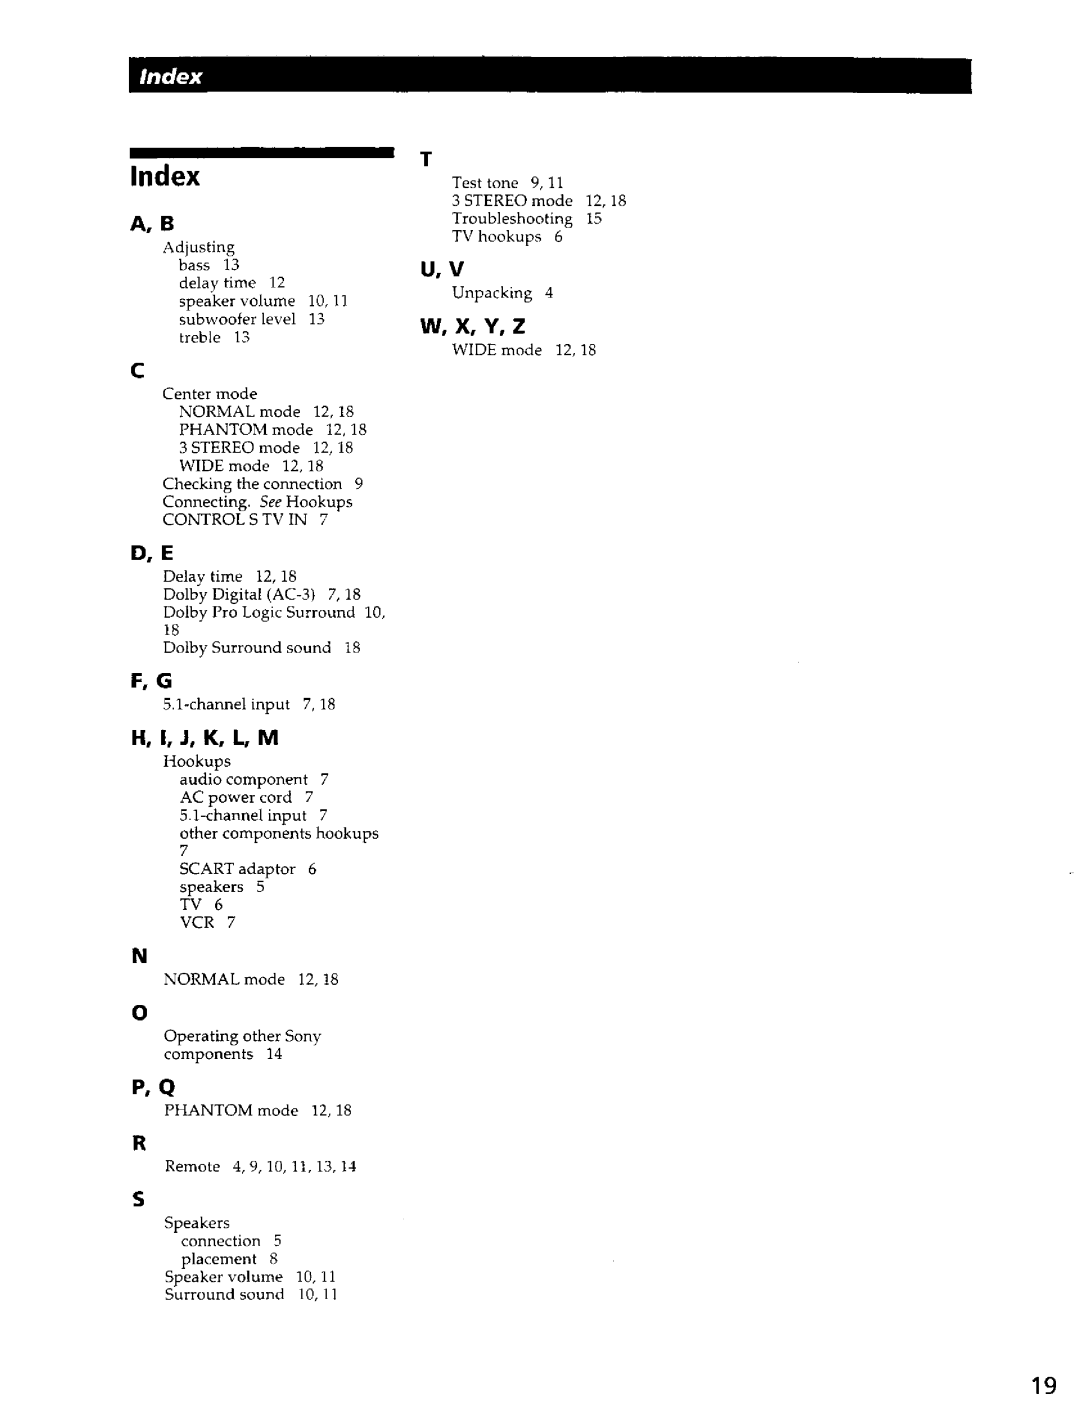 Sony SA-VA700 manual Index, H, I, J, K, L, M, W, X, Y, Z 